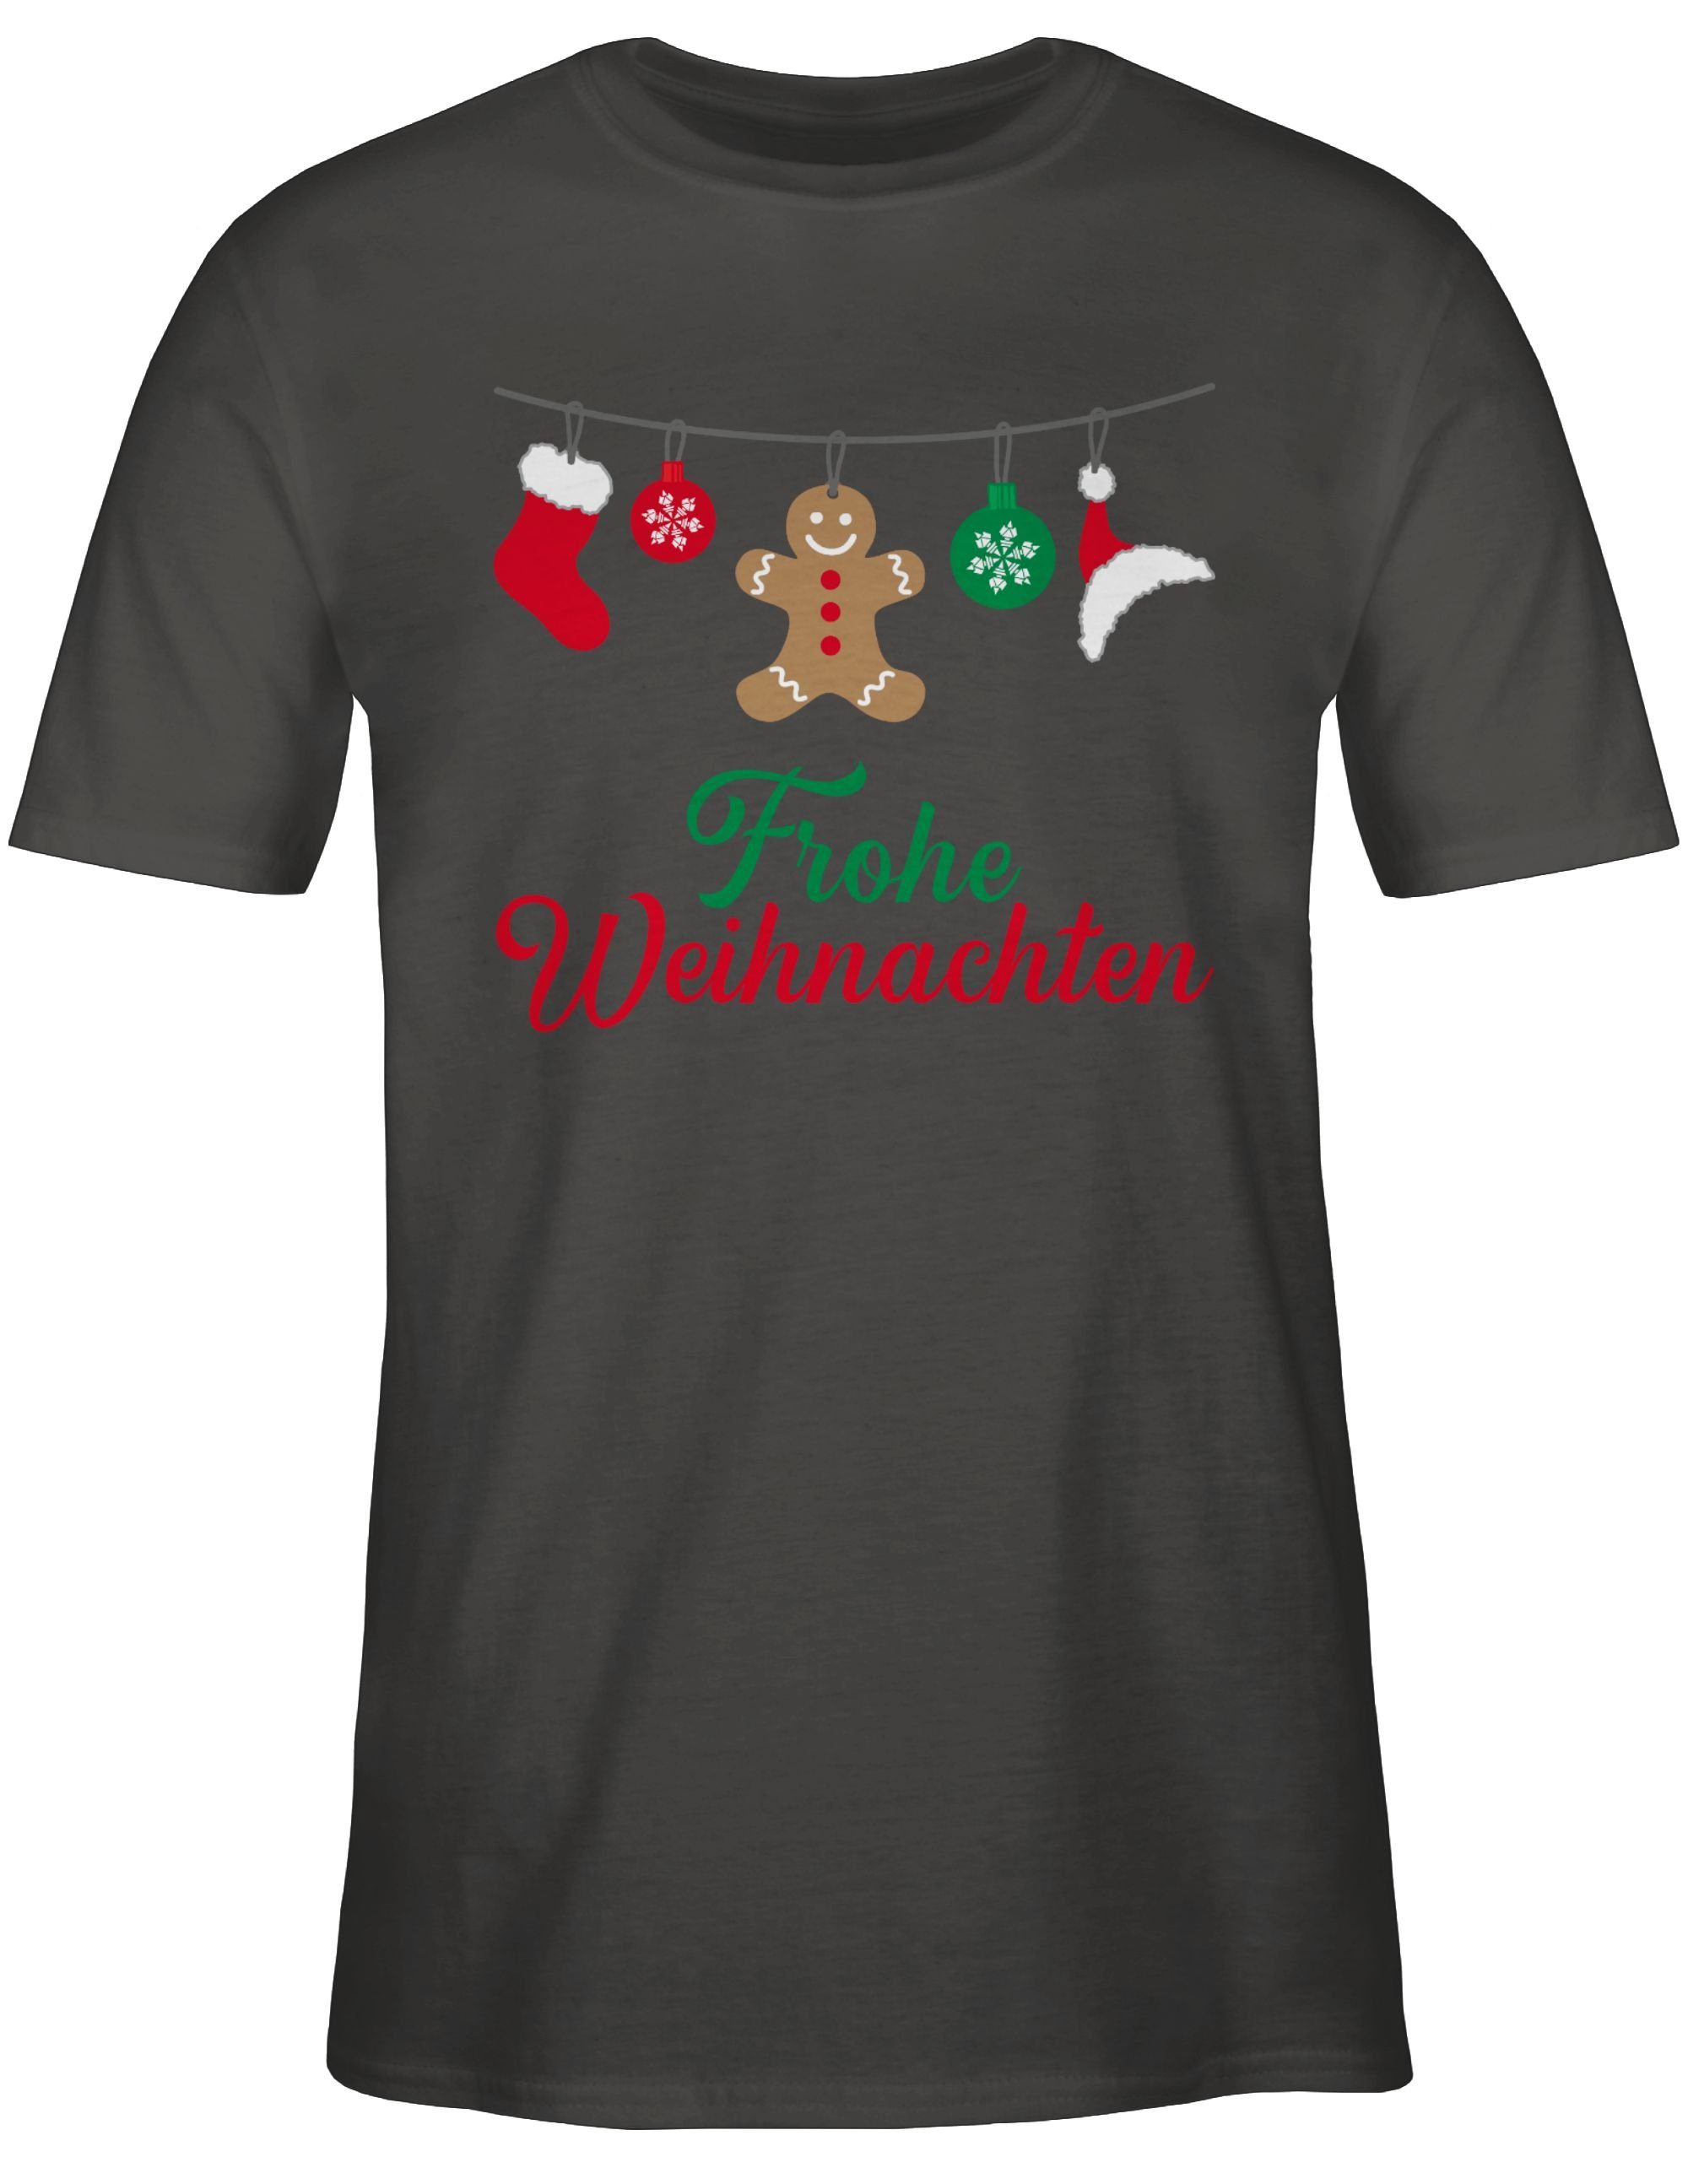 Kleidung Weihachten T-Shirt Weihnachten Frohe Dunkelgrau 3 Shirtracer